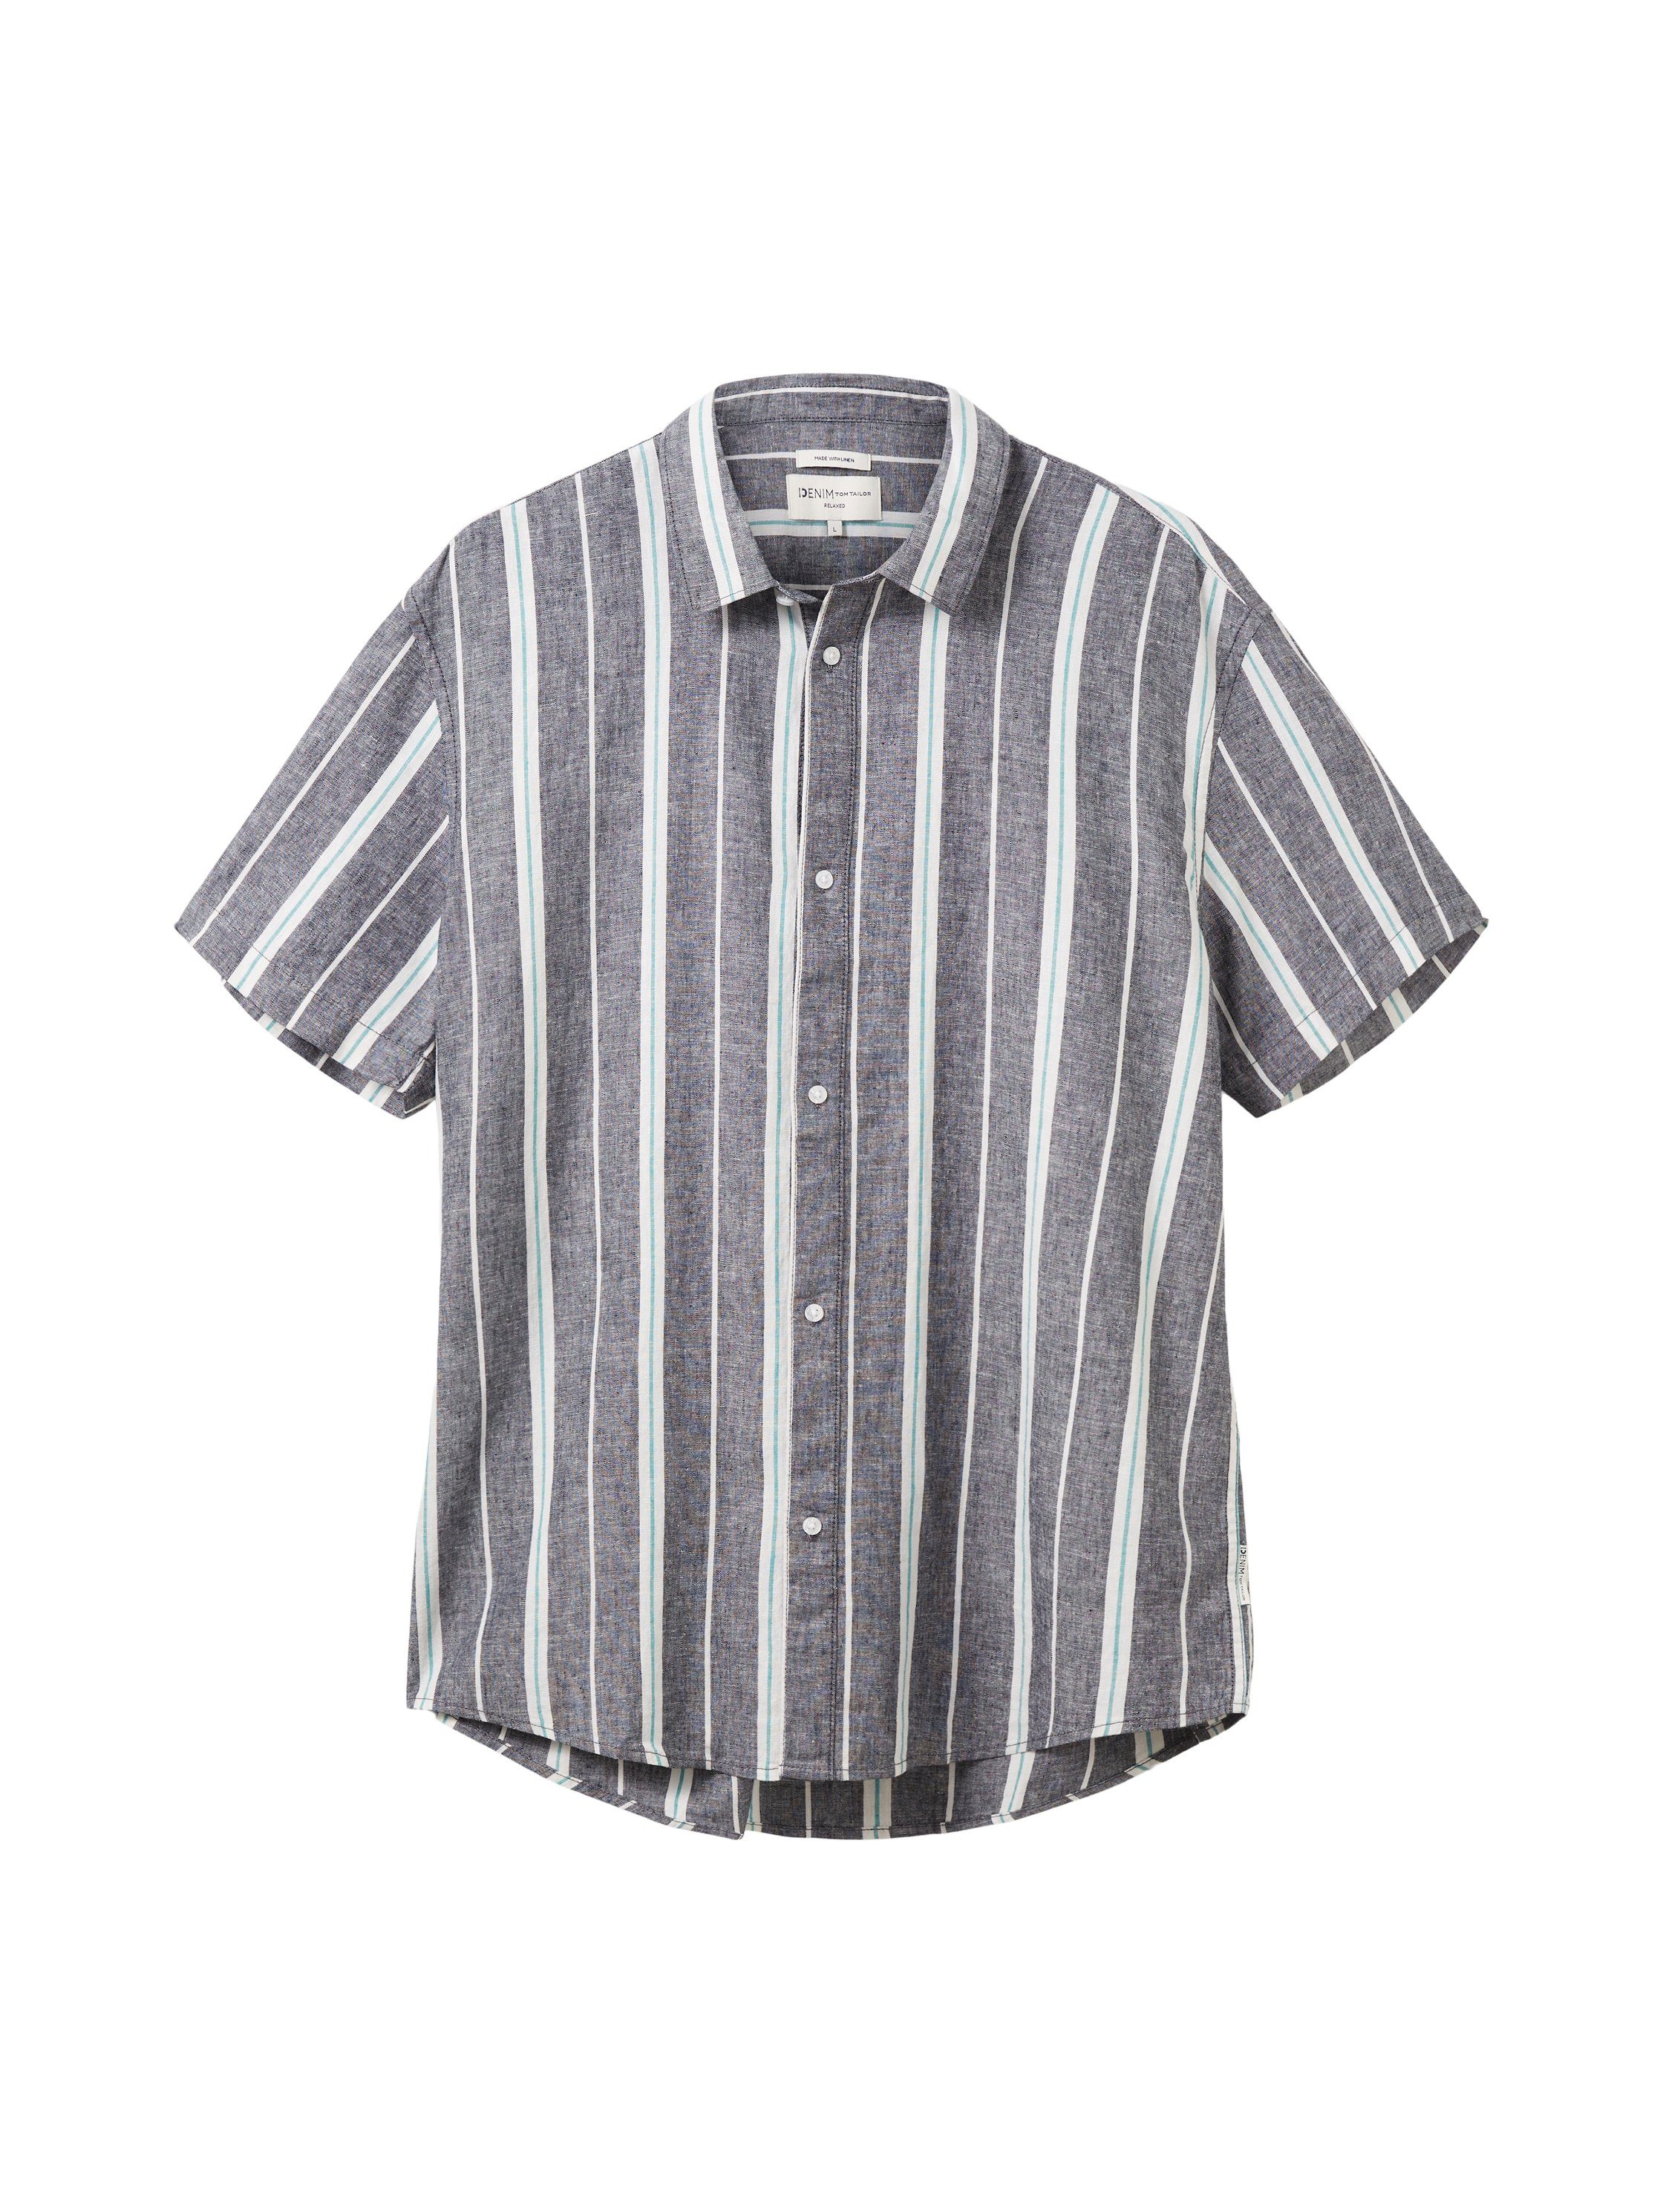 TOM TAILOR Denim Streifenhemd mit kurzen Ärmeln grau-weiß